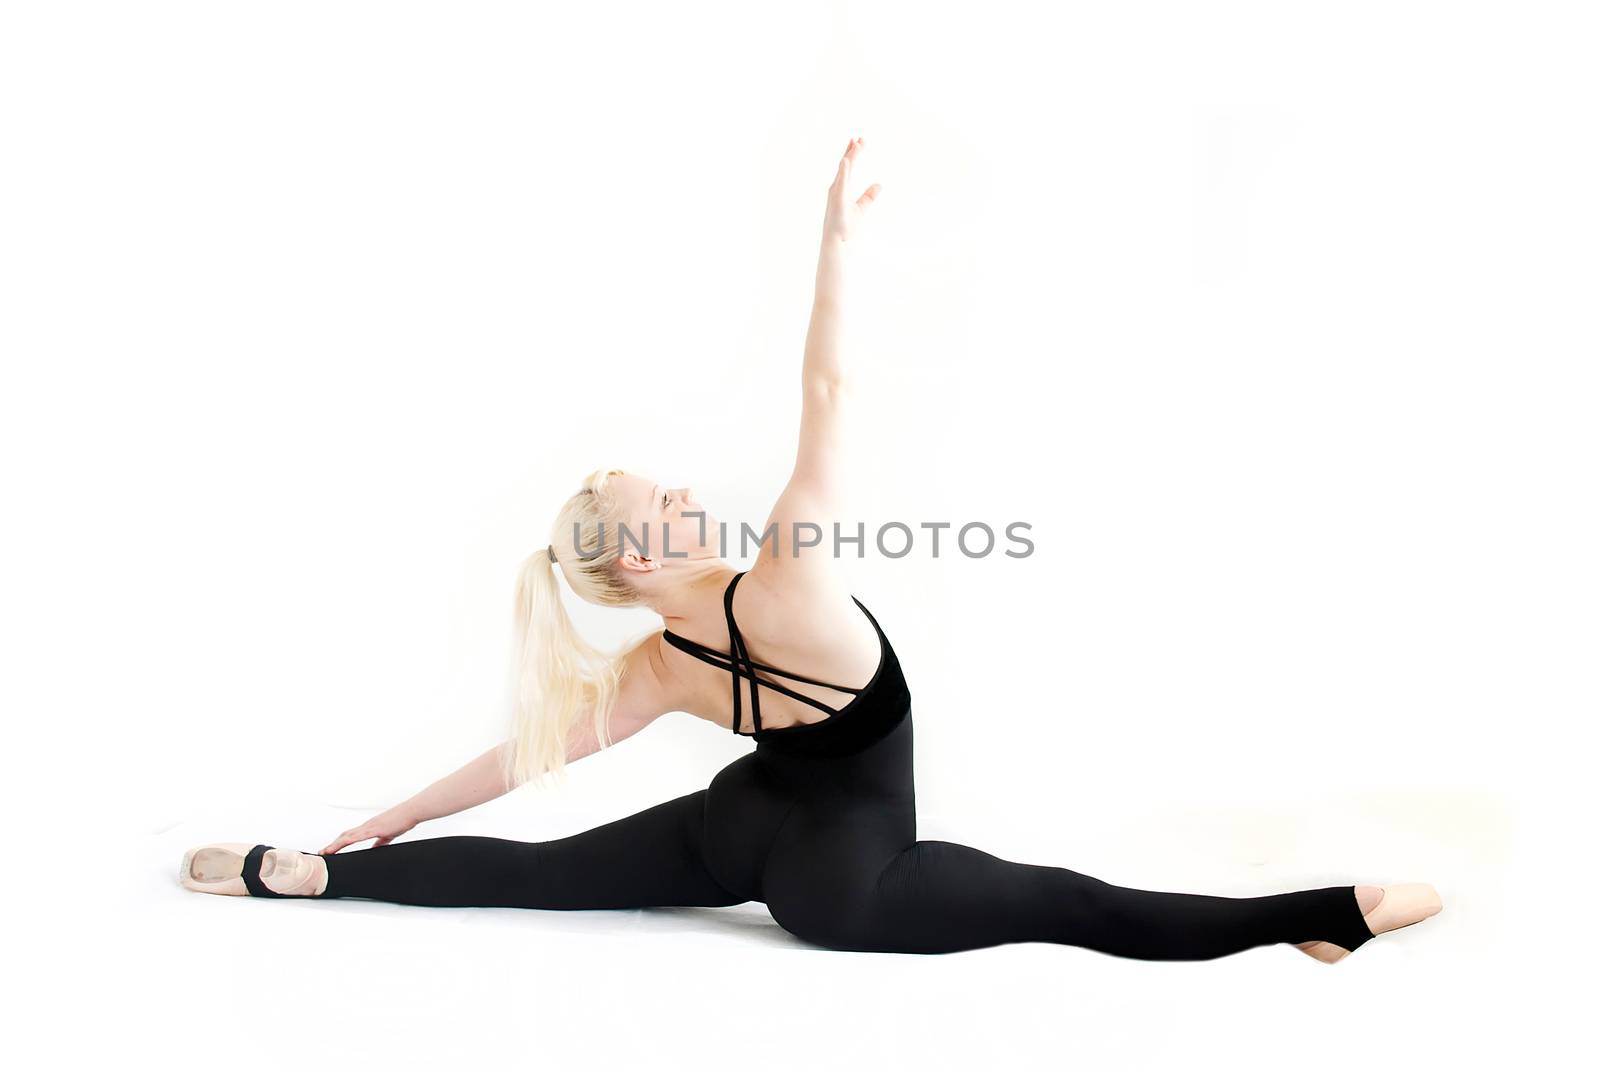 female ballet dancer isolated on white background